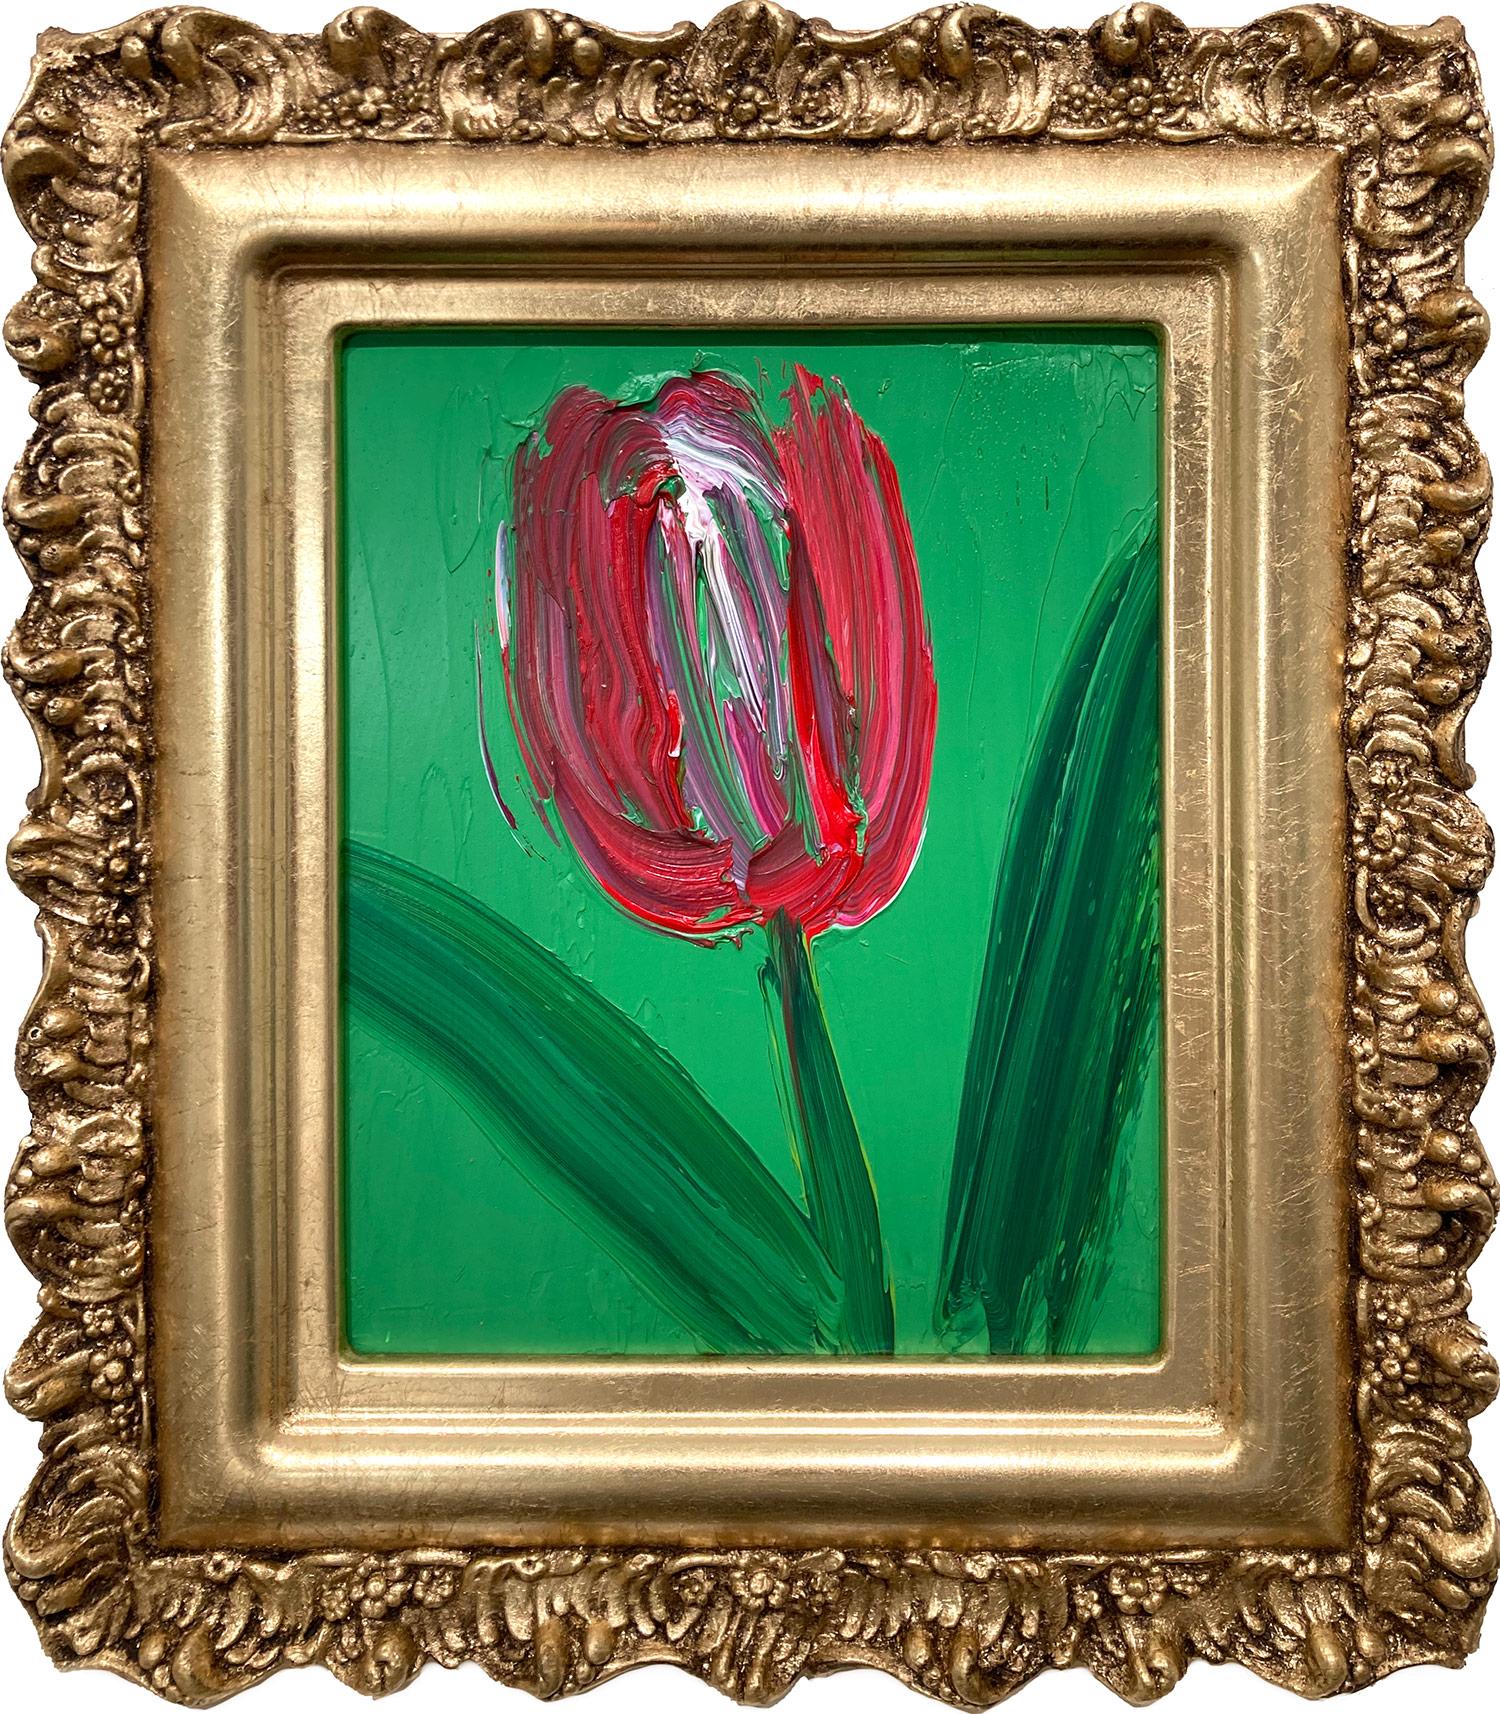 Rot-weiße Tulpe ohne Titel auf Waldgrünem Hintergrund, Ölgemälde, gerahmt